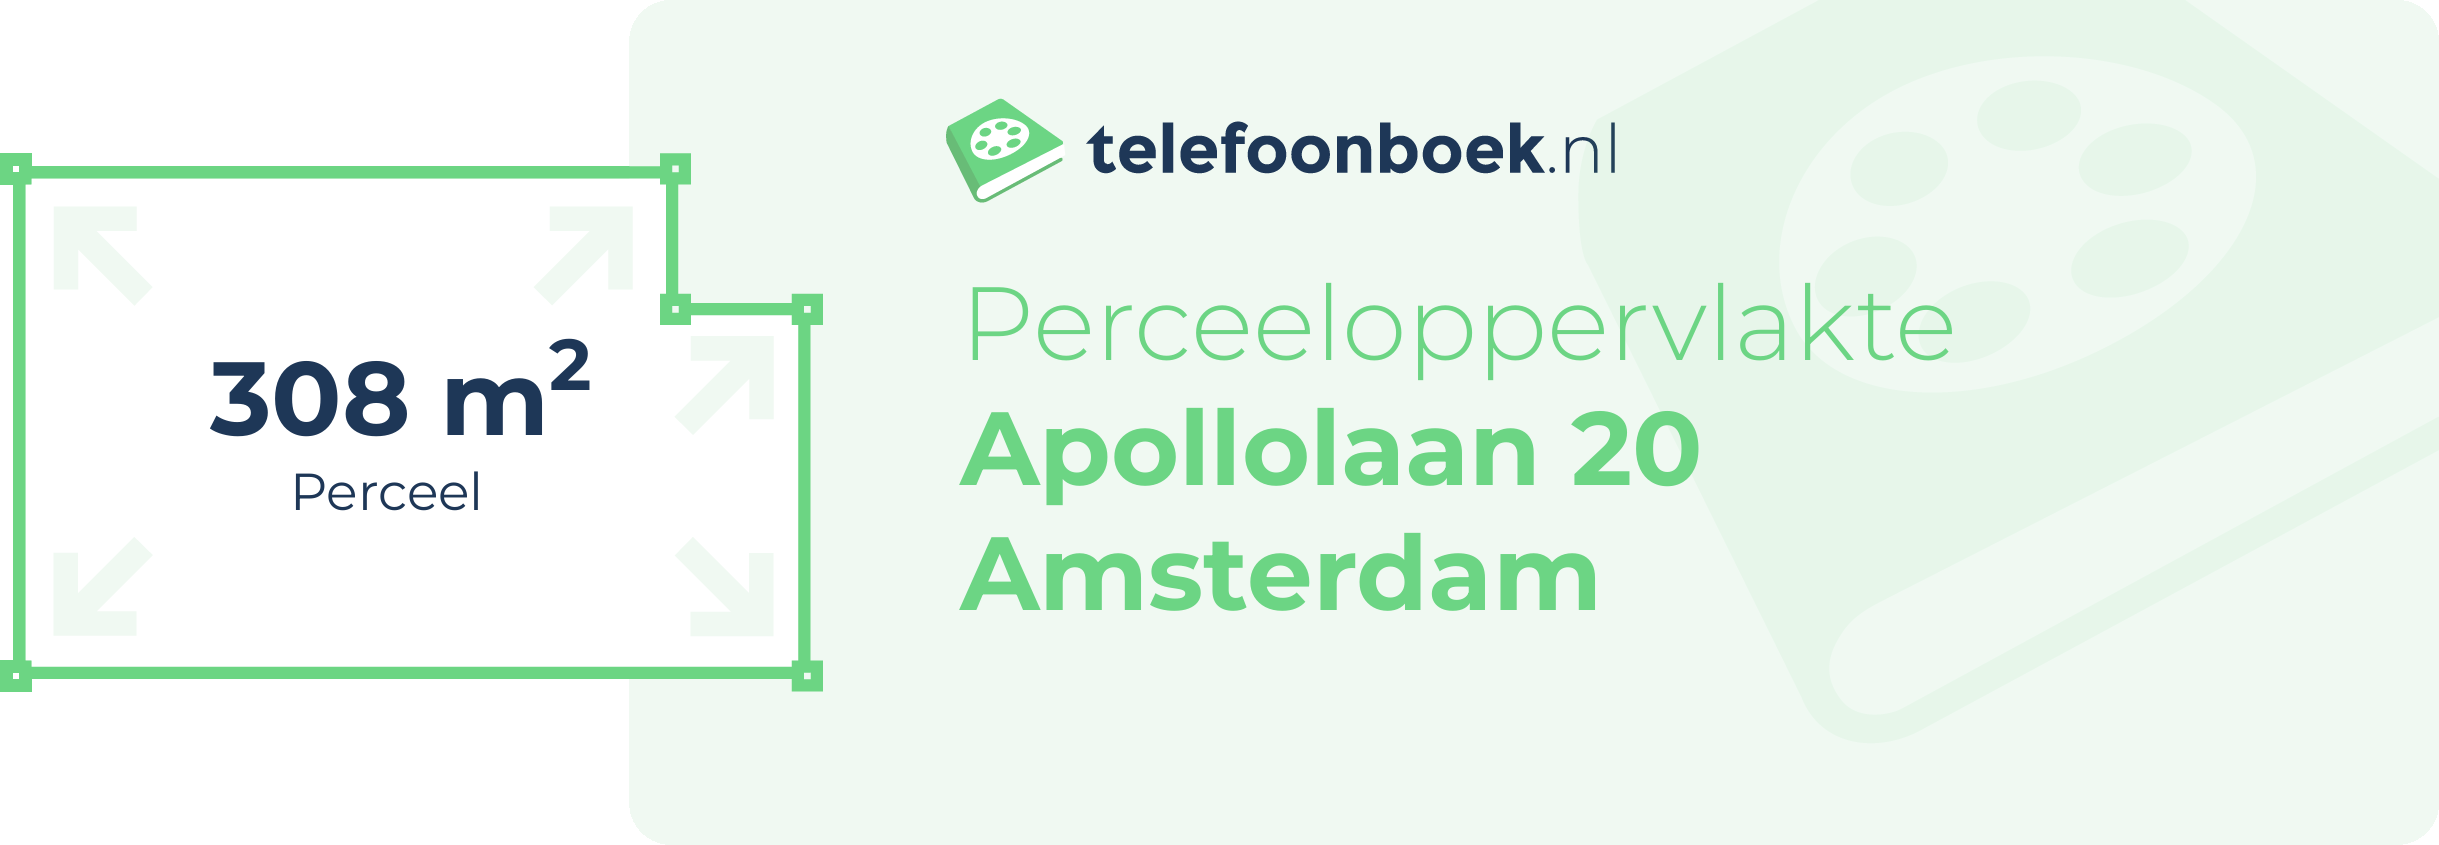 Perceeloppervlakte Apollolaan 20 Amsterdam